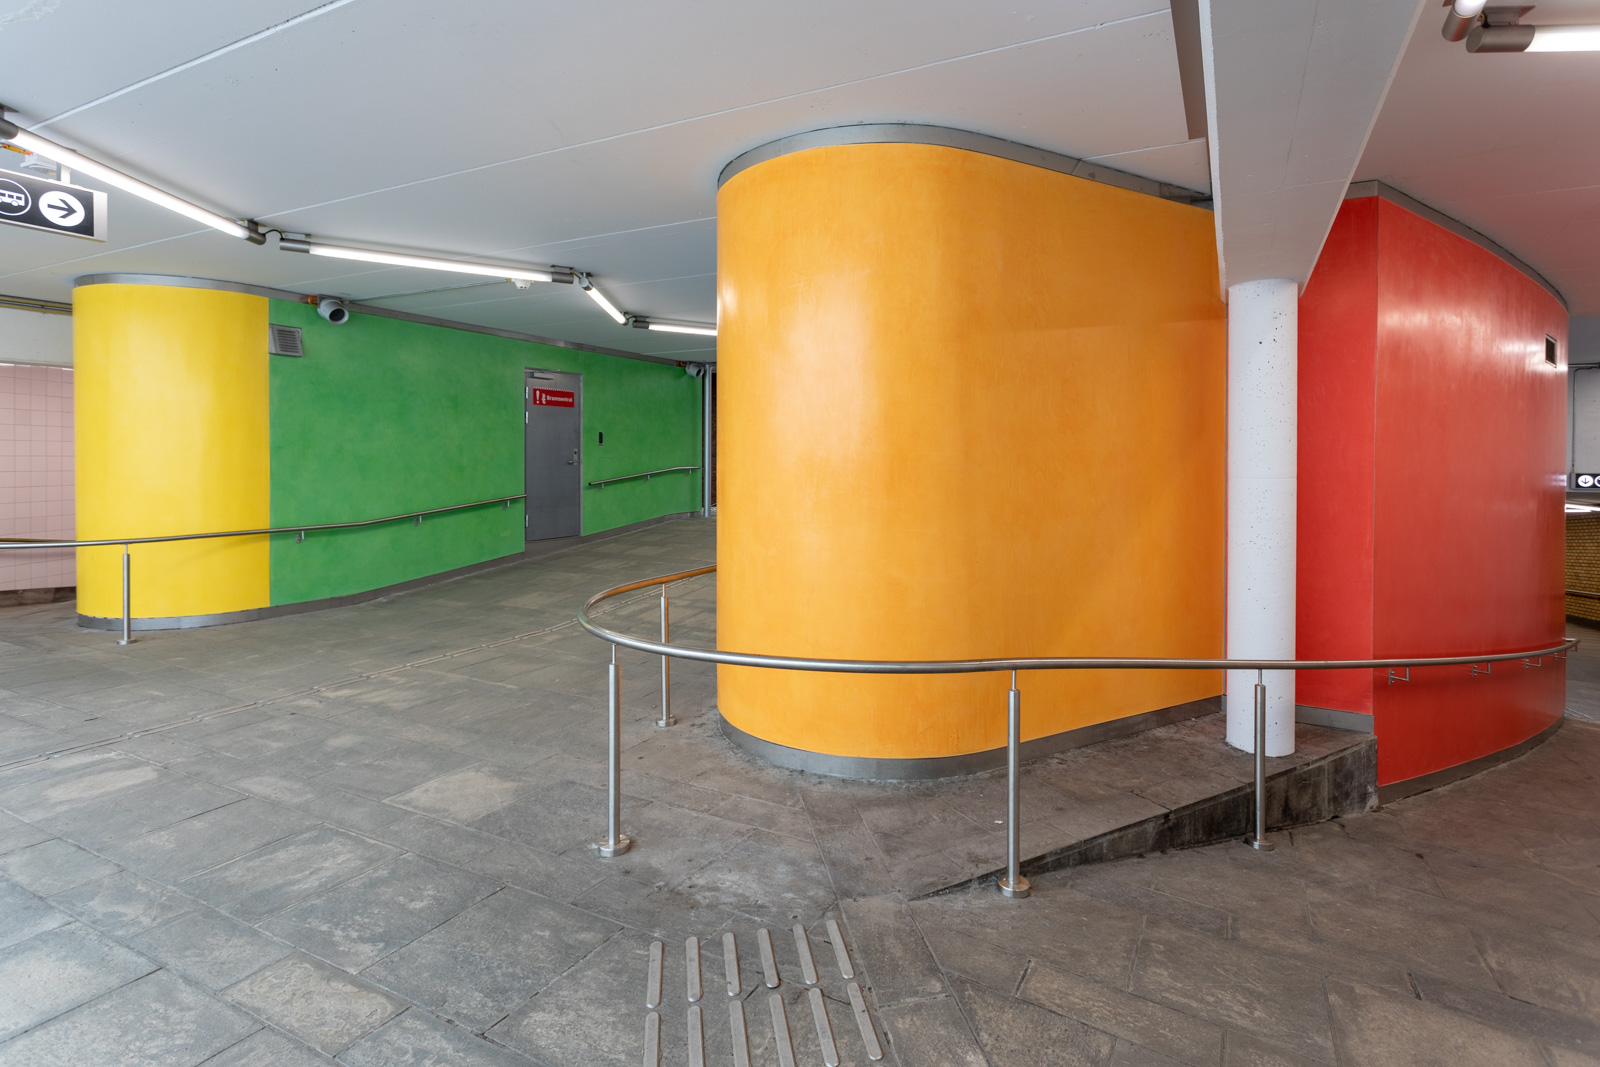    Å samle på farger..&nbsp; Stucco Lustro, installed at Helsfyr Subway Station in Oslo, 2019. Commissioned by Oslo Kommune and Sporveien 